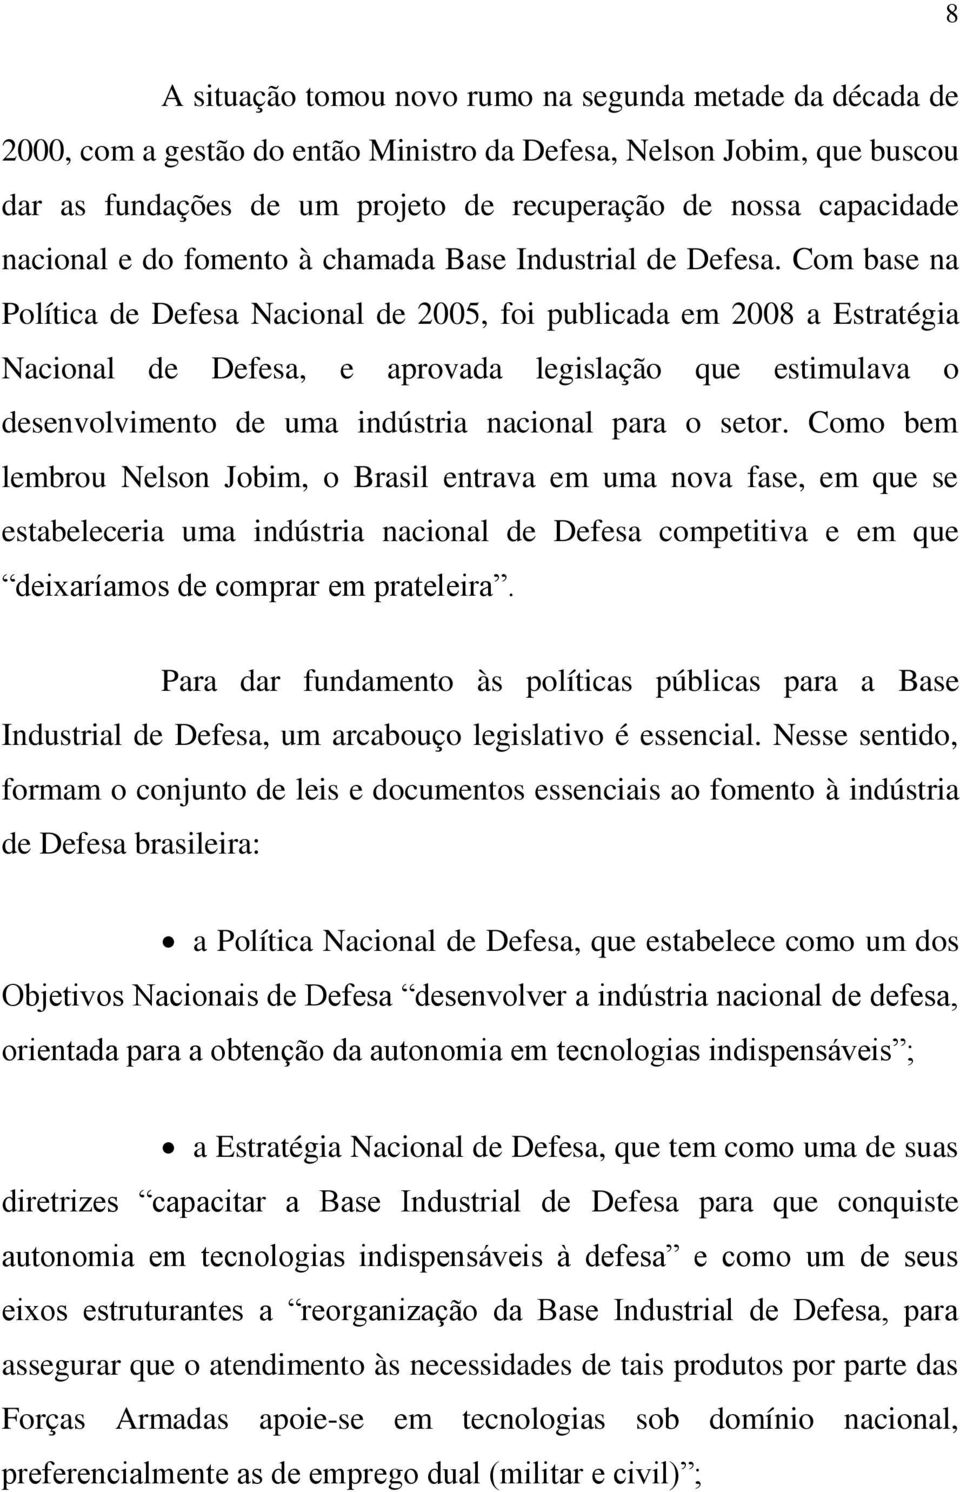 Com base na Política de Defesa Nacional de 2005, foi publicada em 2008 a Estratégia Nacional de Defesa, e aprovada legislação que estimulava o desenvolvimento de uma indústria nacional para o setor.